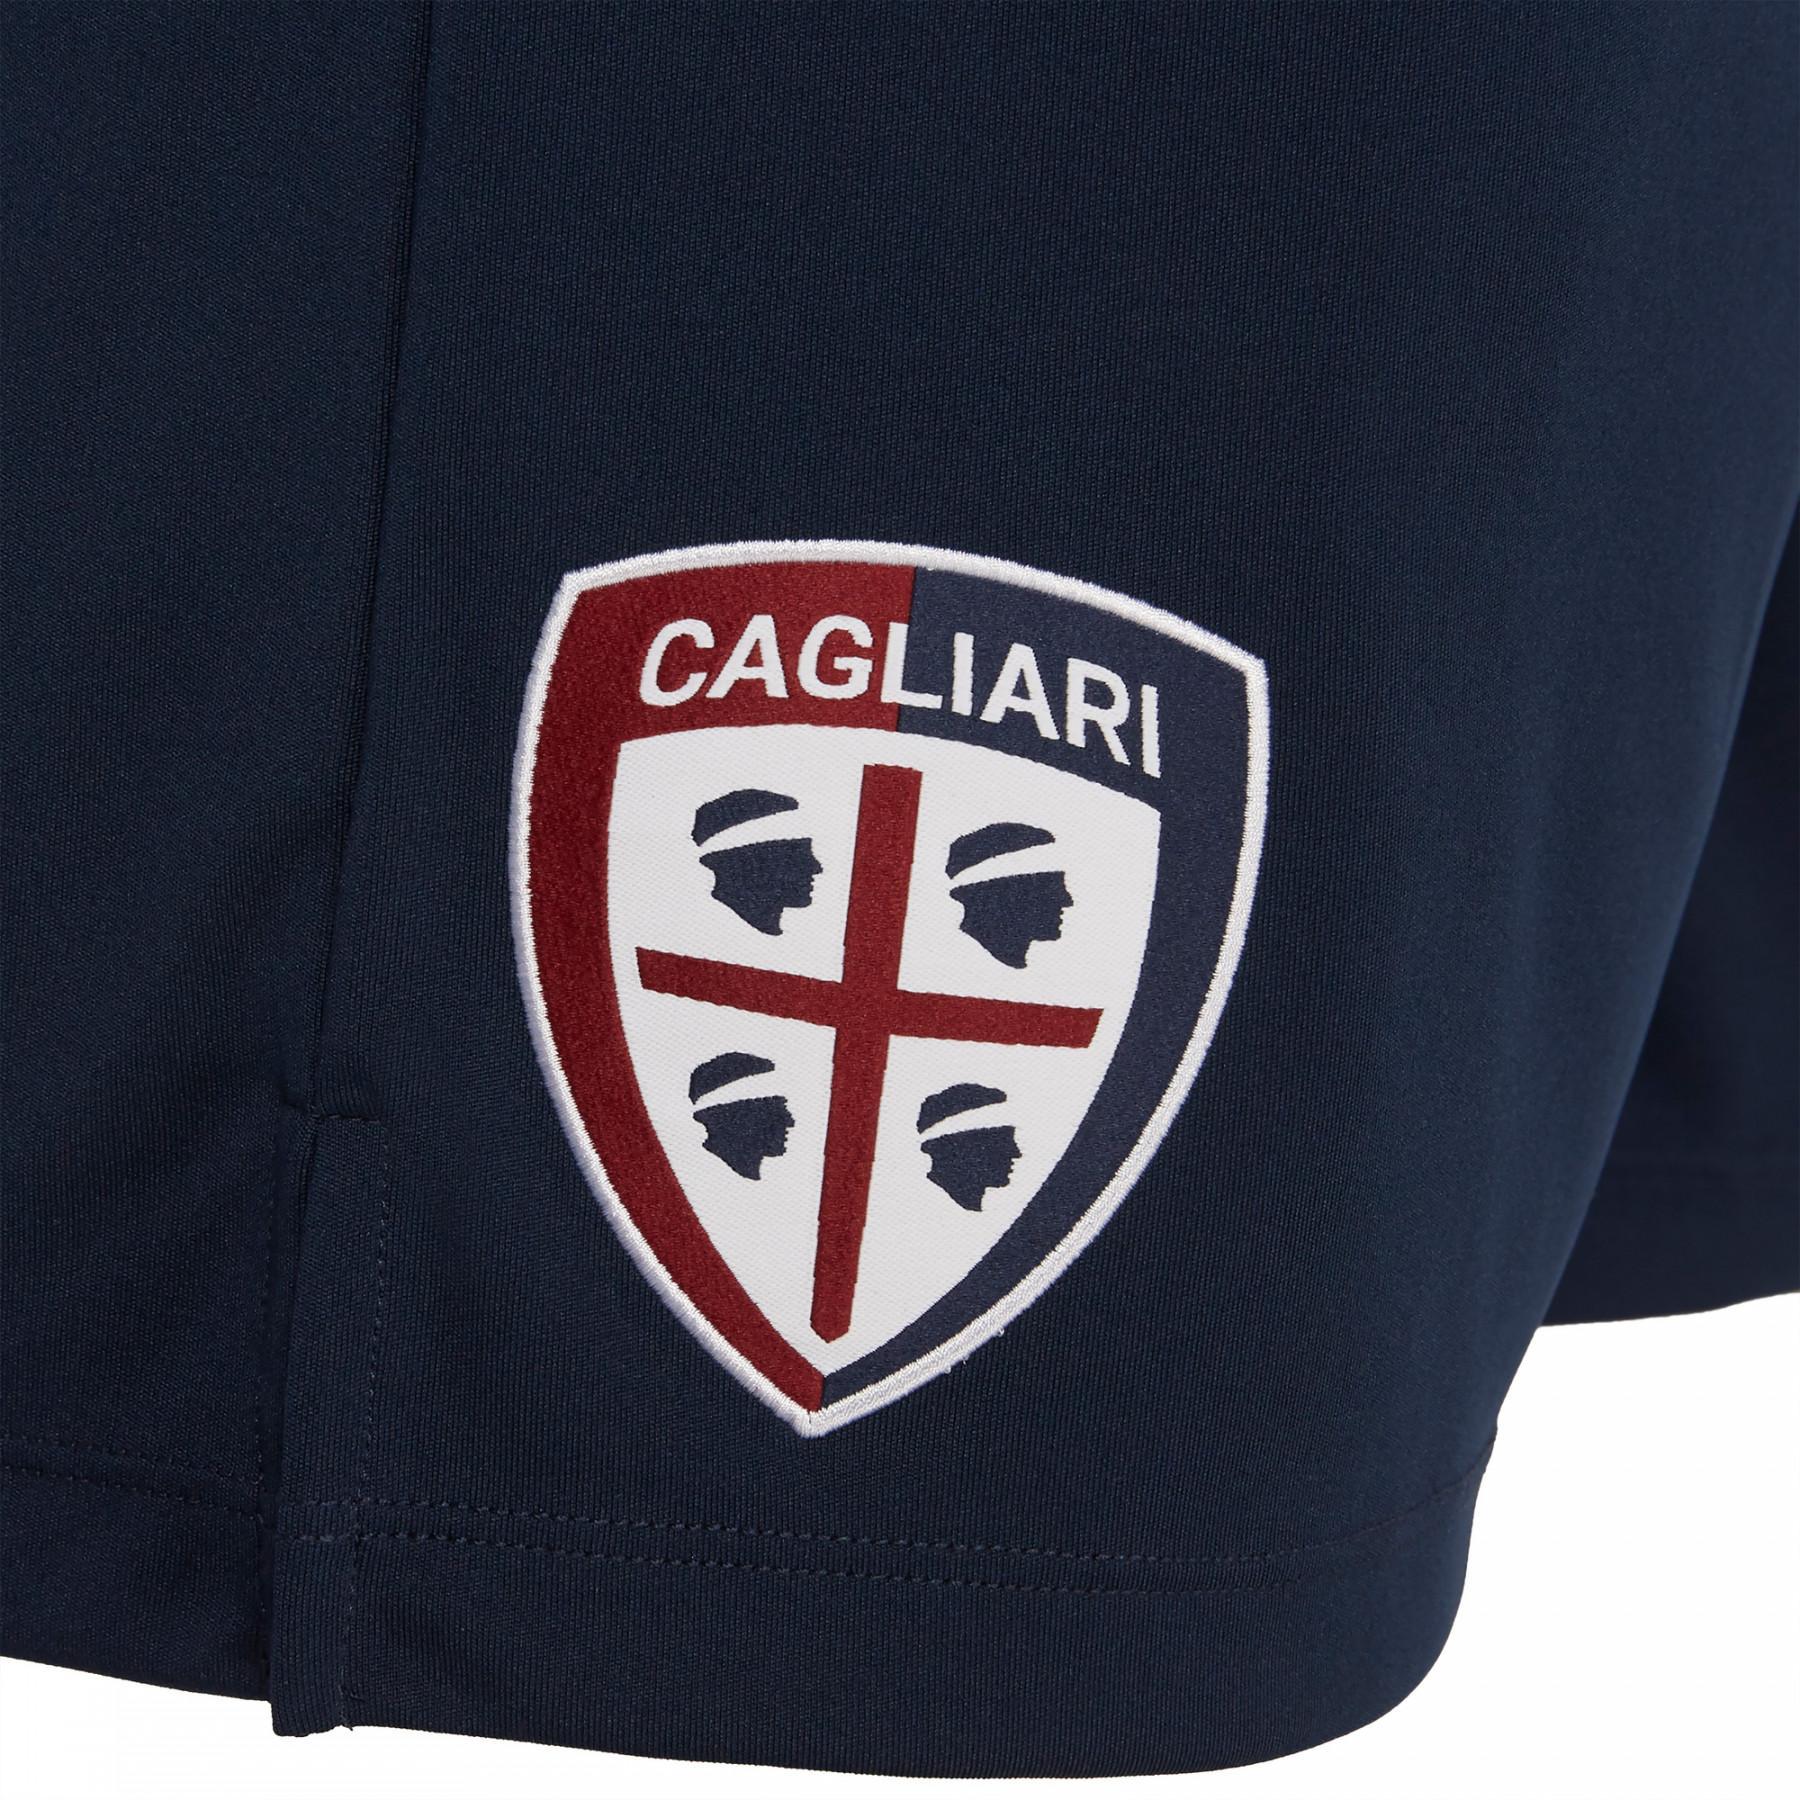 Krótkie szkolenie Cagliari Calcio 19/20